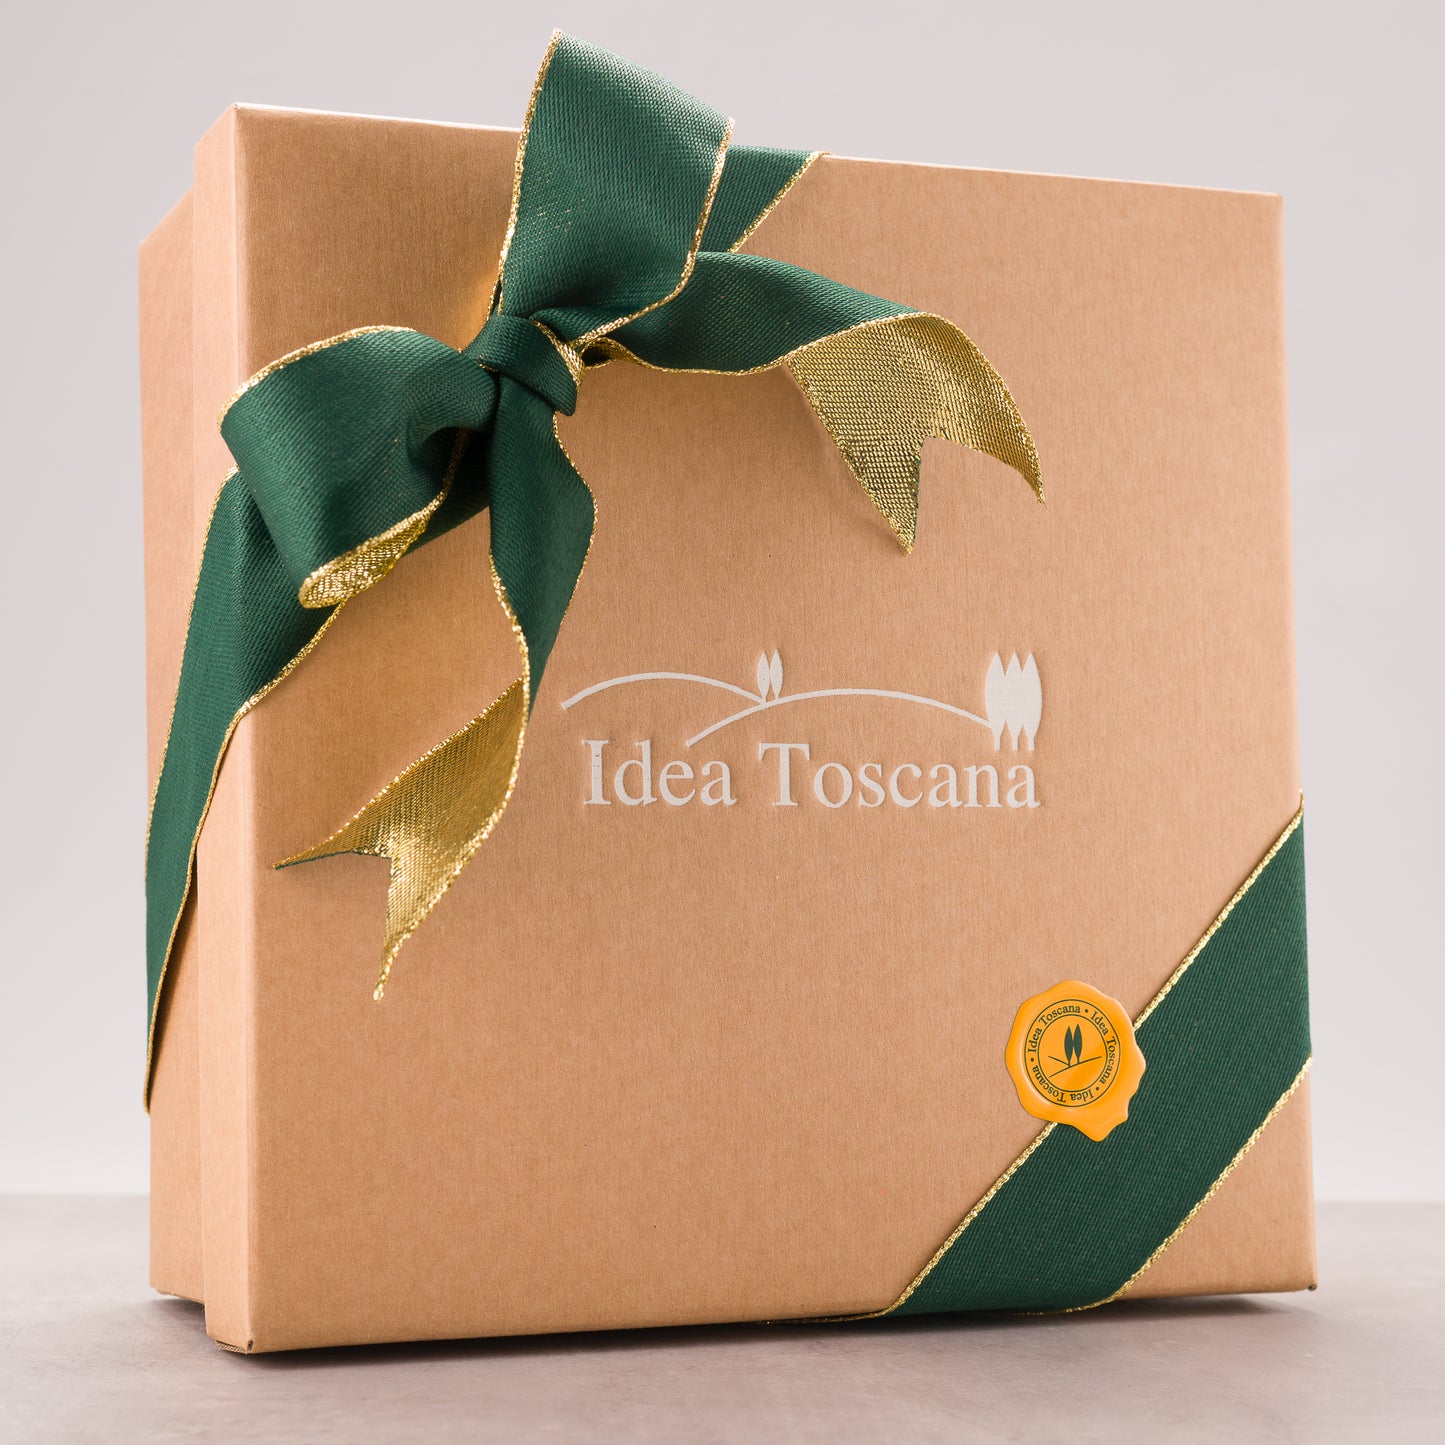 Natura Bio Gift Box - Idea Toscana